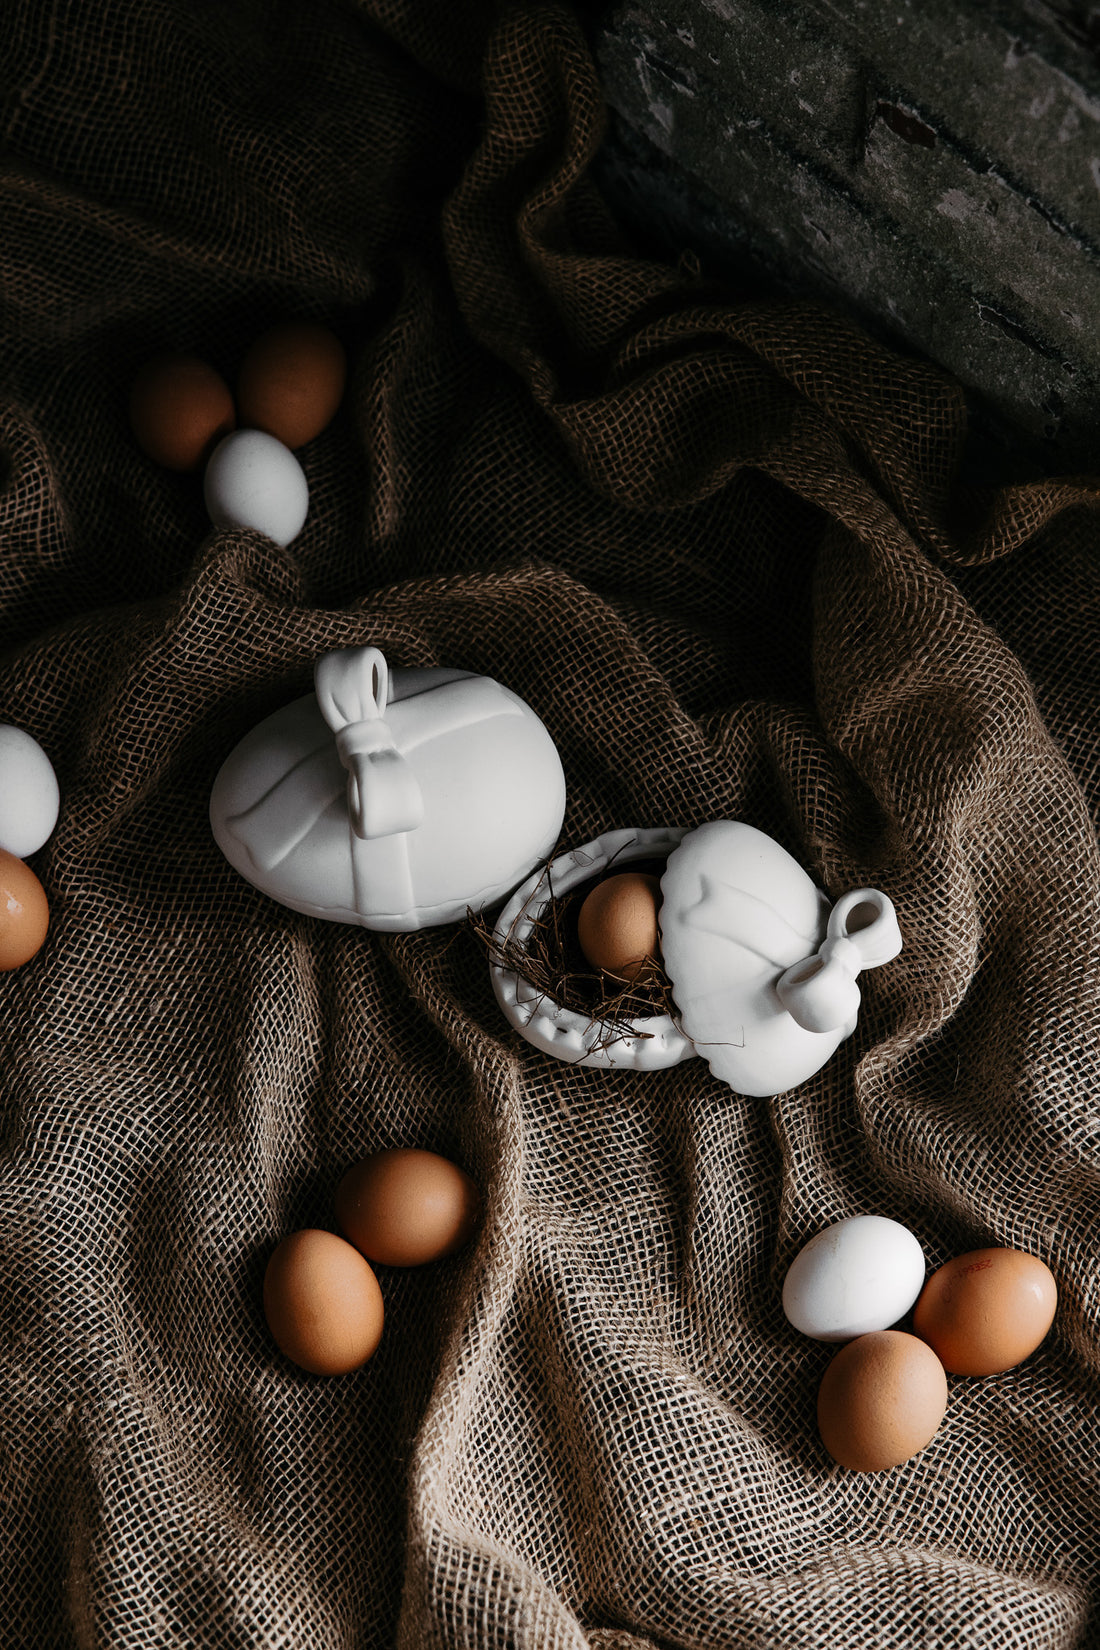 Matt White Ceramic Easter Egg with Bow